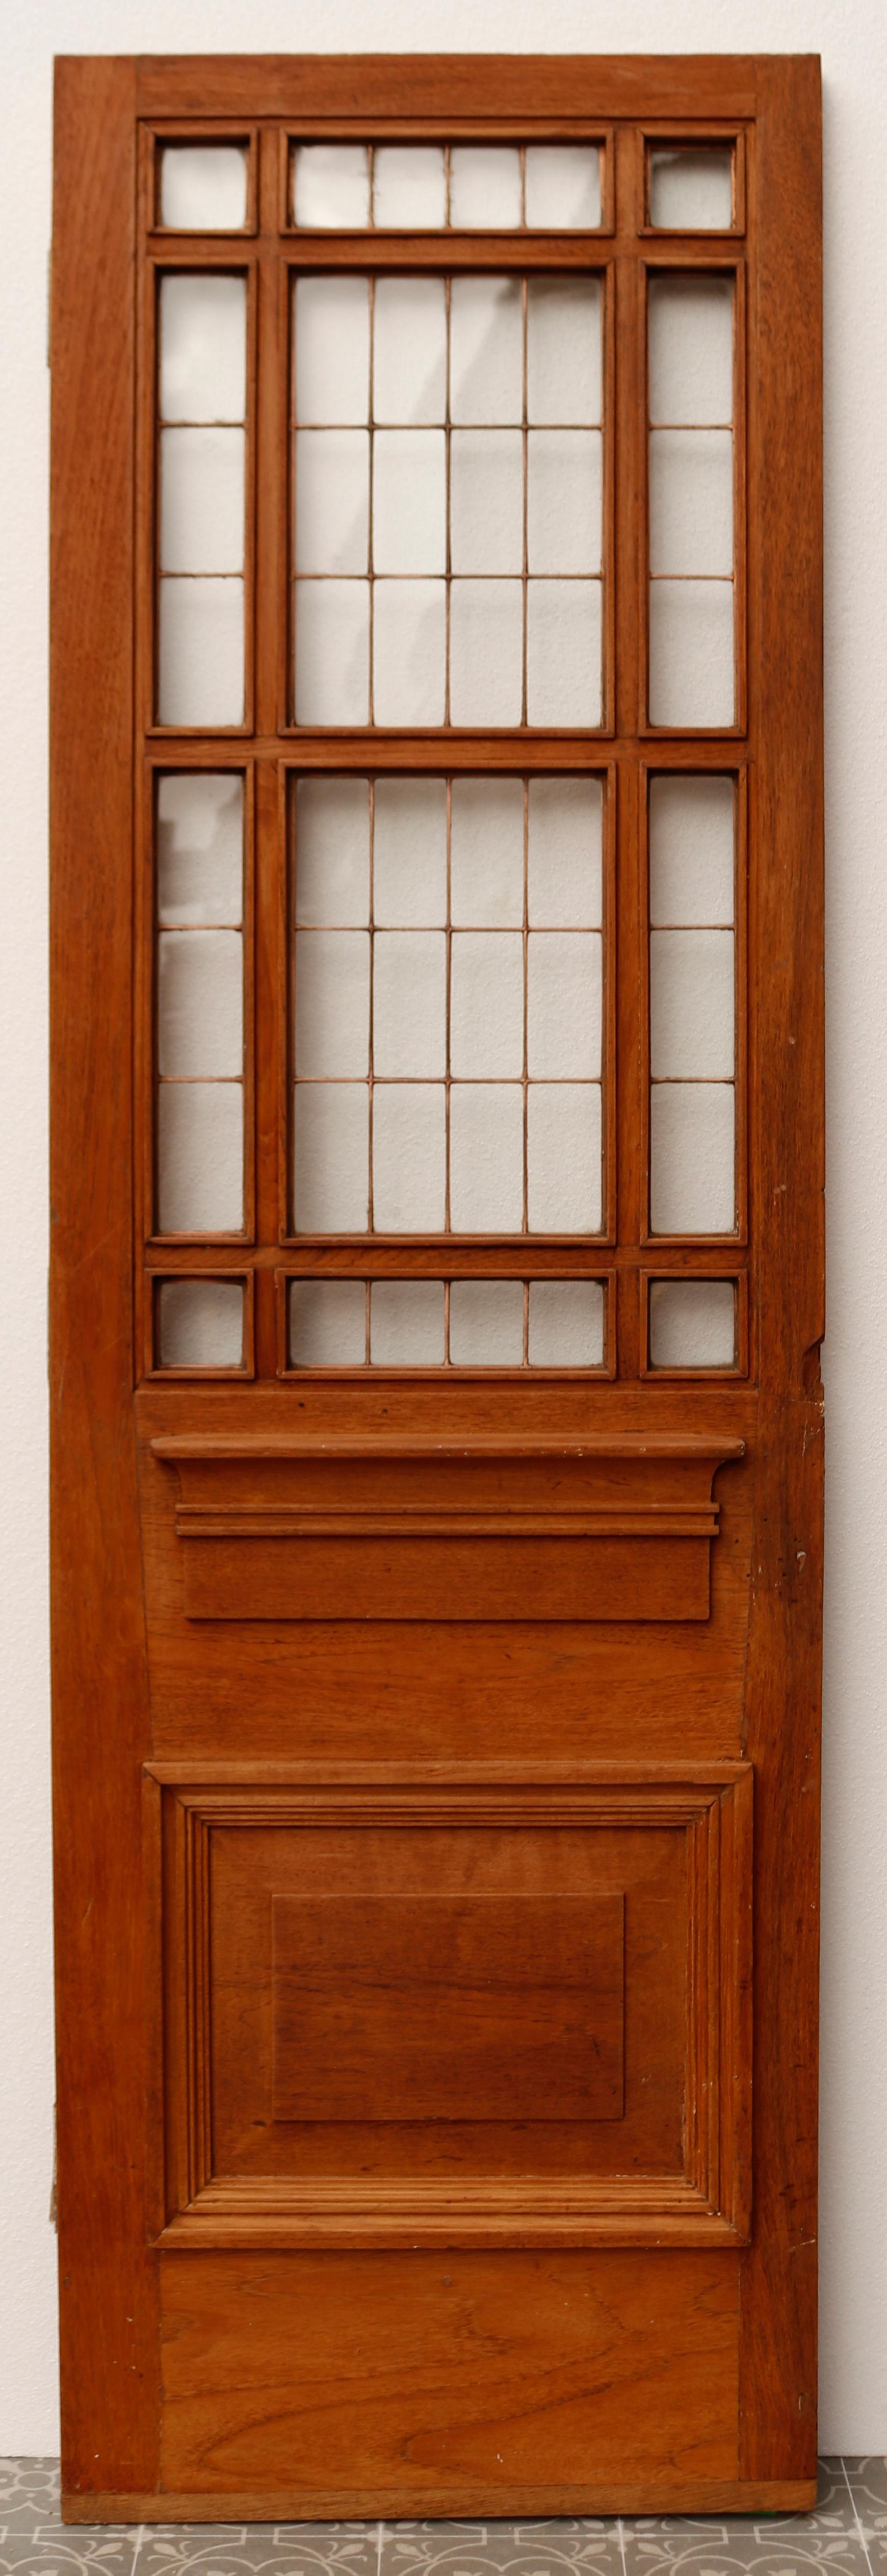 fielded panel door